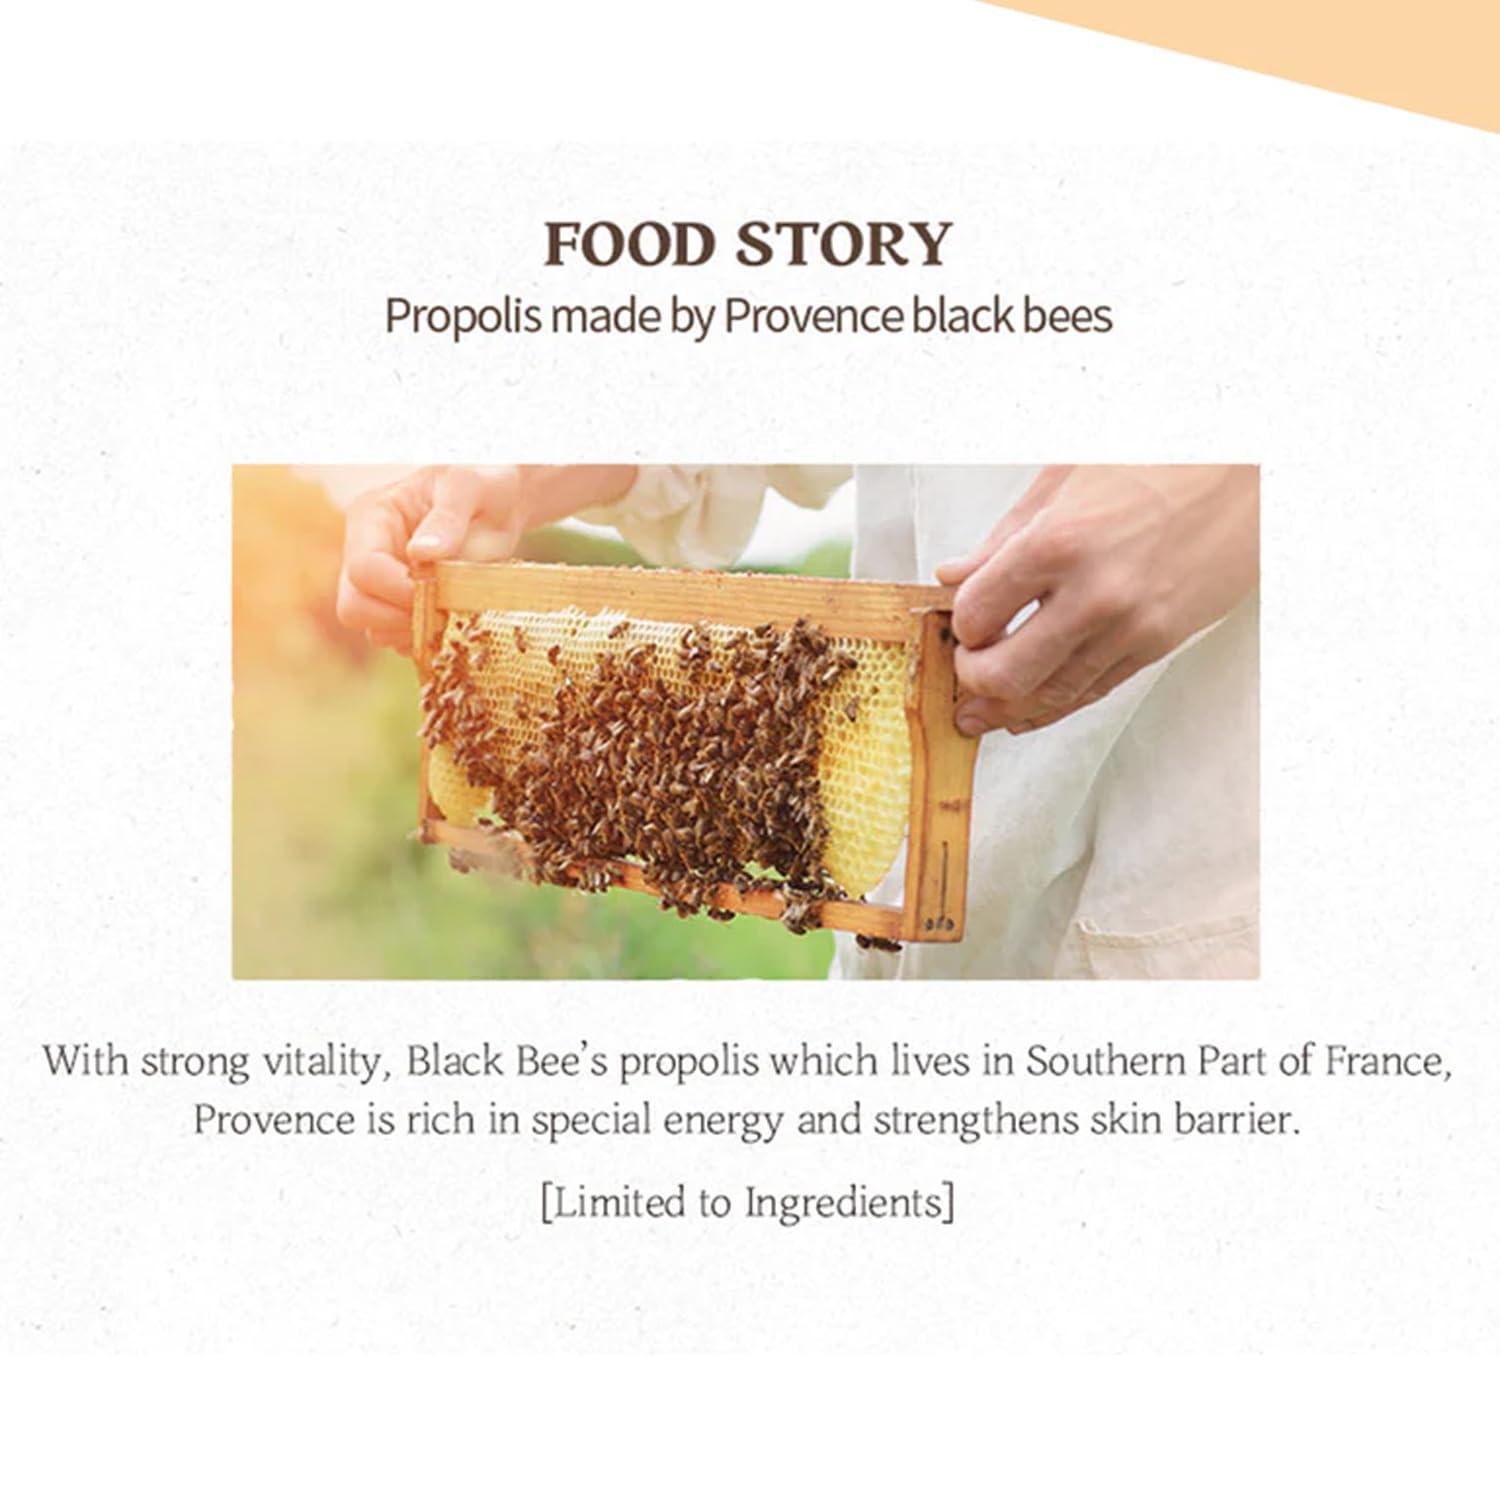 سكين فود مستحلب غني بالعسل الملكي، مستحلب أساسي لتغذية وترطيب البشرة بالعسل المركز، يرطب البشرة، يناسب البشرة الجافة والخشنة 160 مل